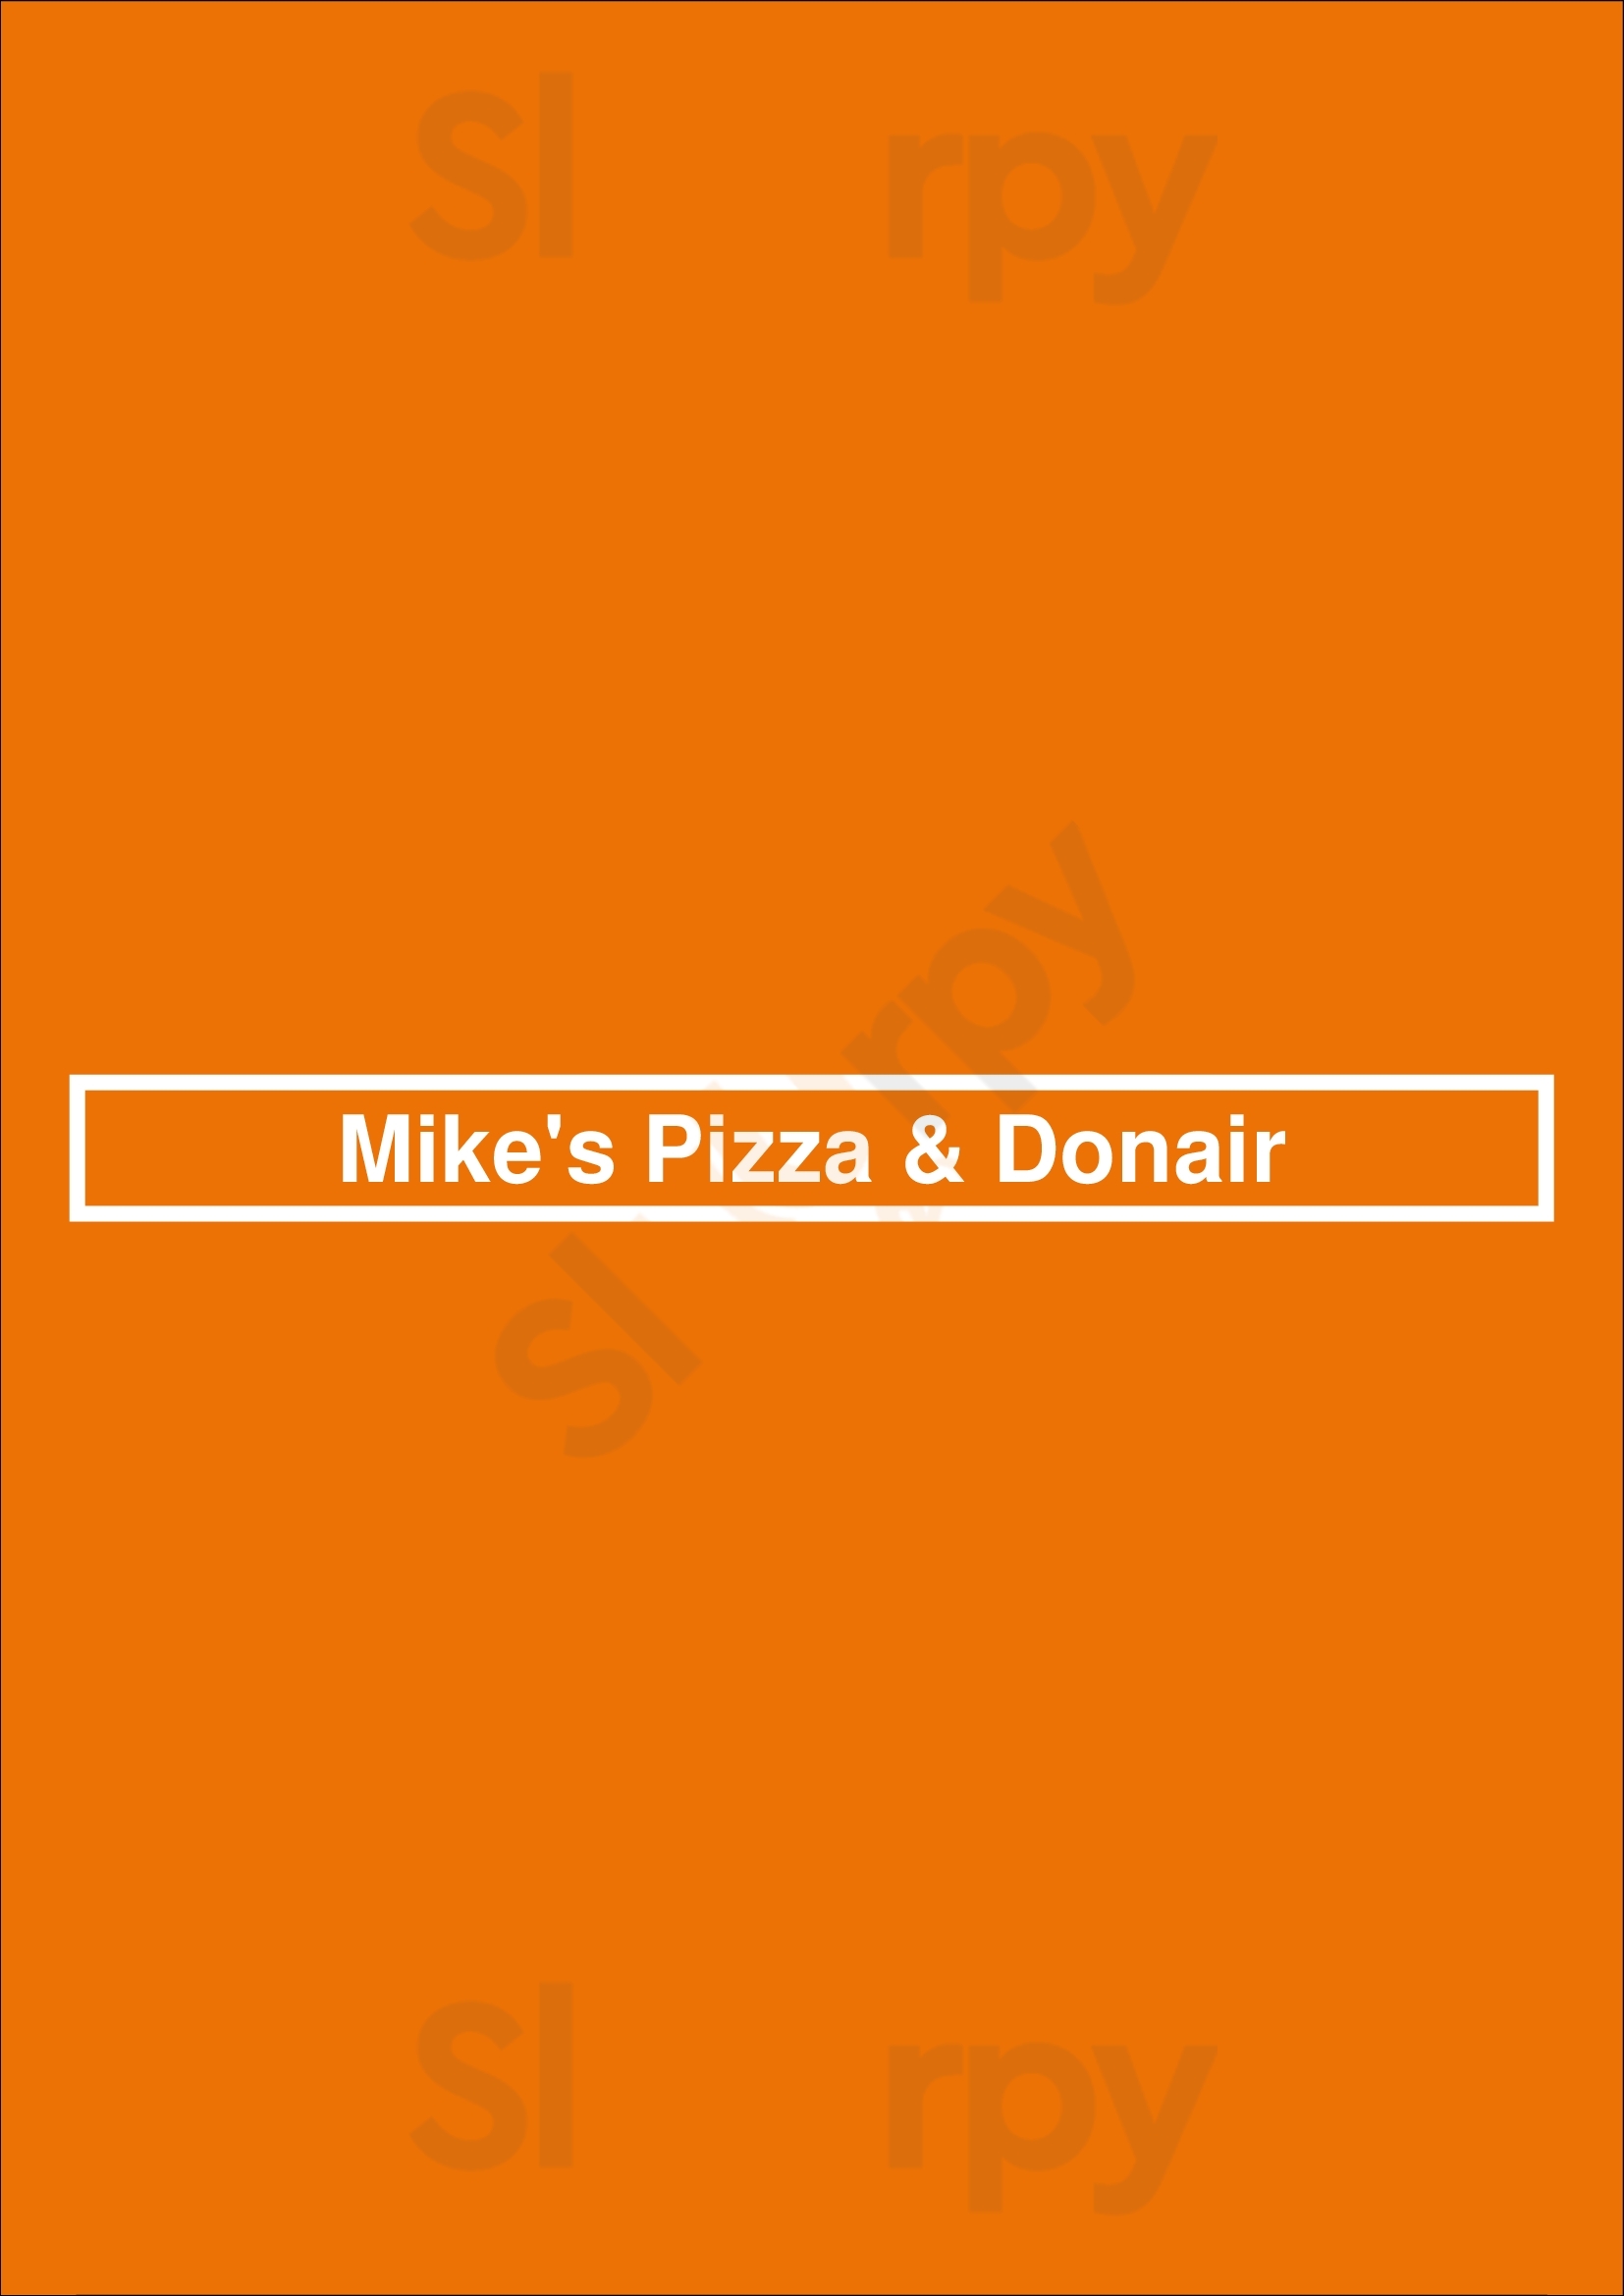 Mike's Pizza & Donair London Menu - 1